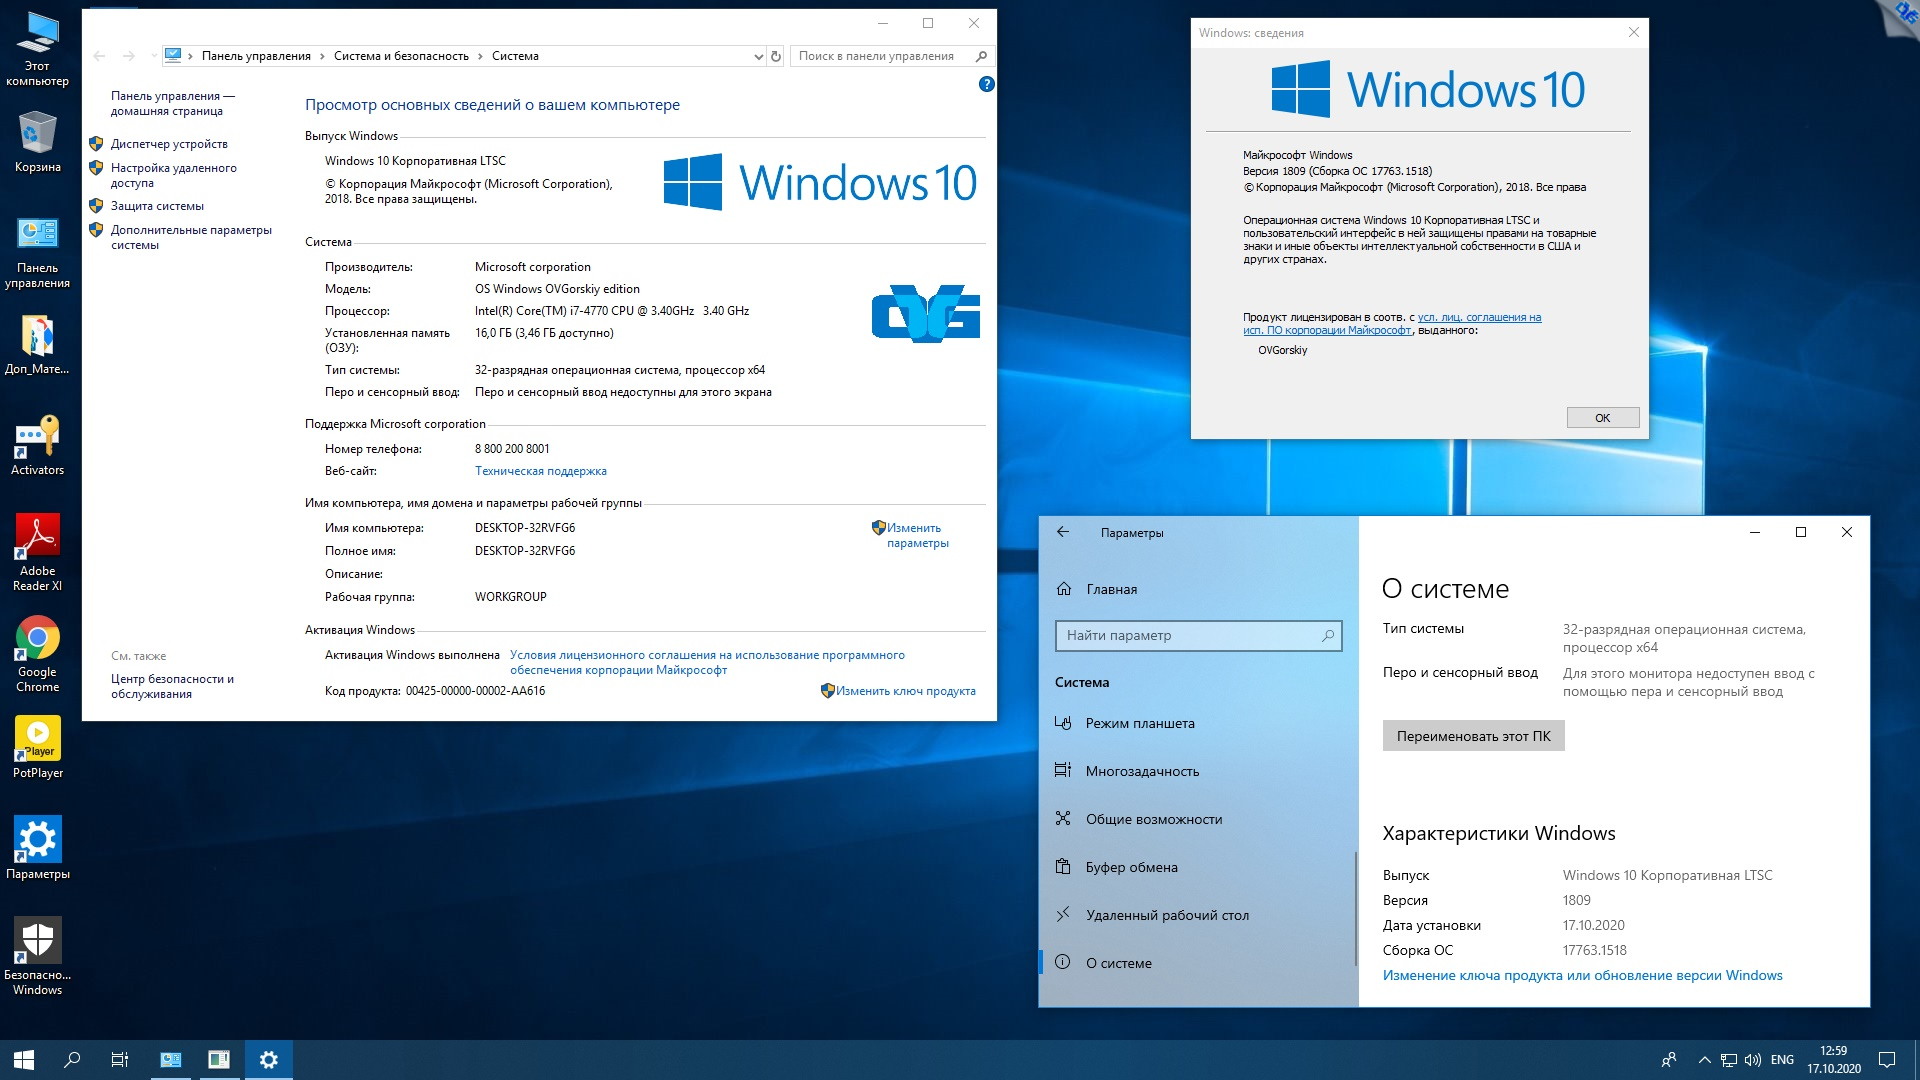 Виндовс 10 сборка для слабый. Виндовс 10 корпоративная LTSC. Windows 10 Enterprise (корпоративная). Windows 10 Enterprise корпоративная) 64 bit. Windows 10 Pro корпоративная.